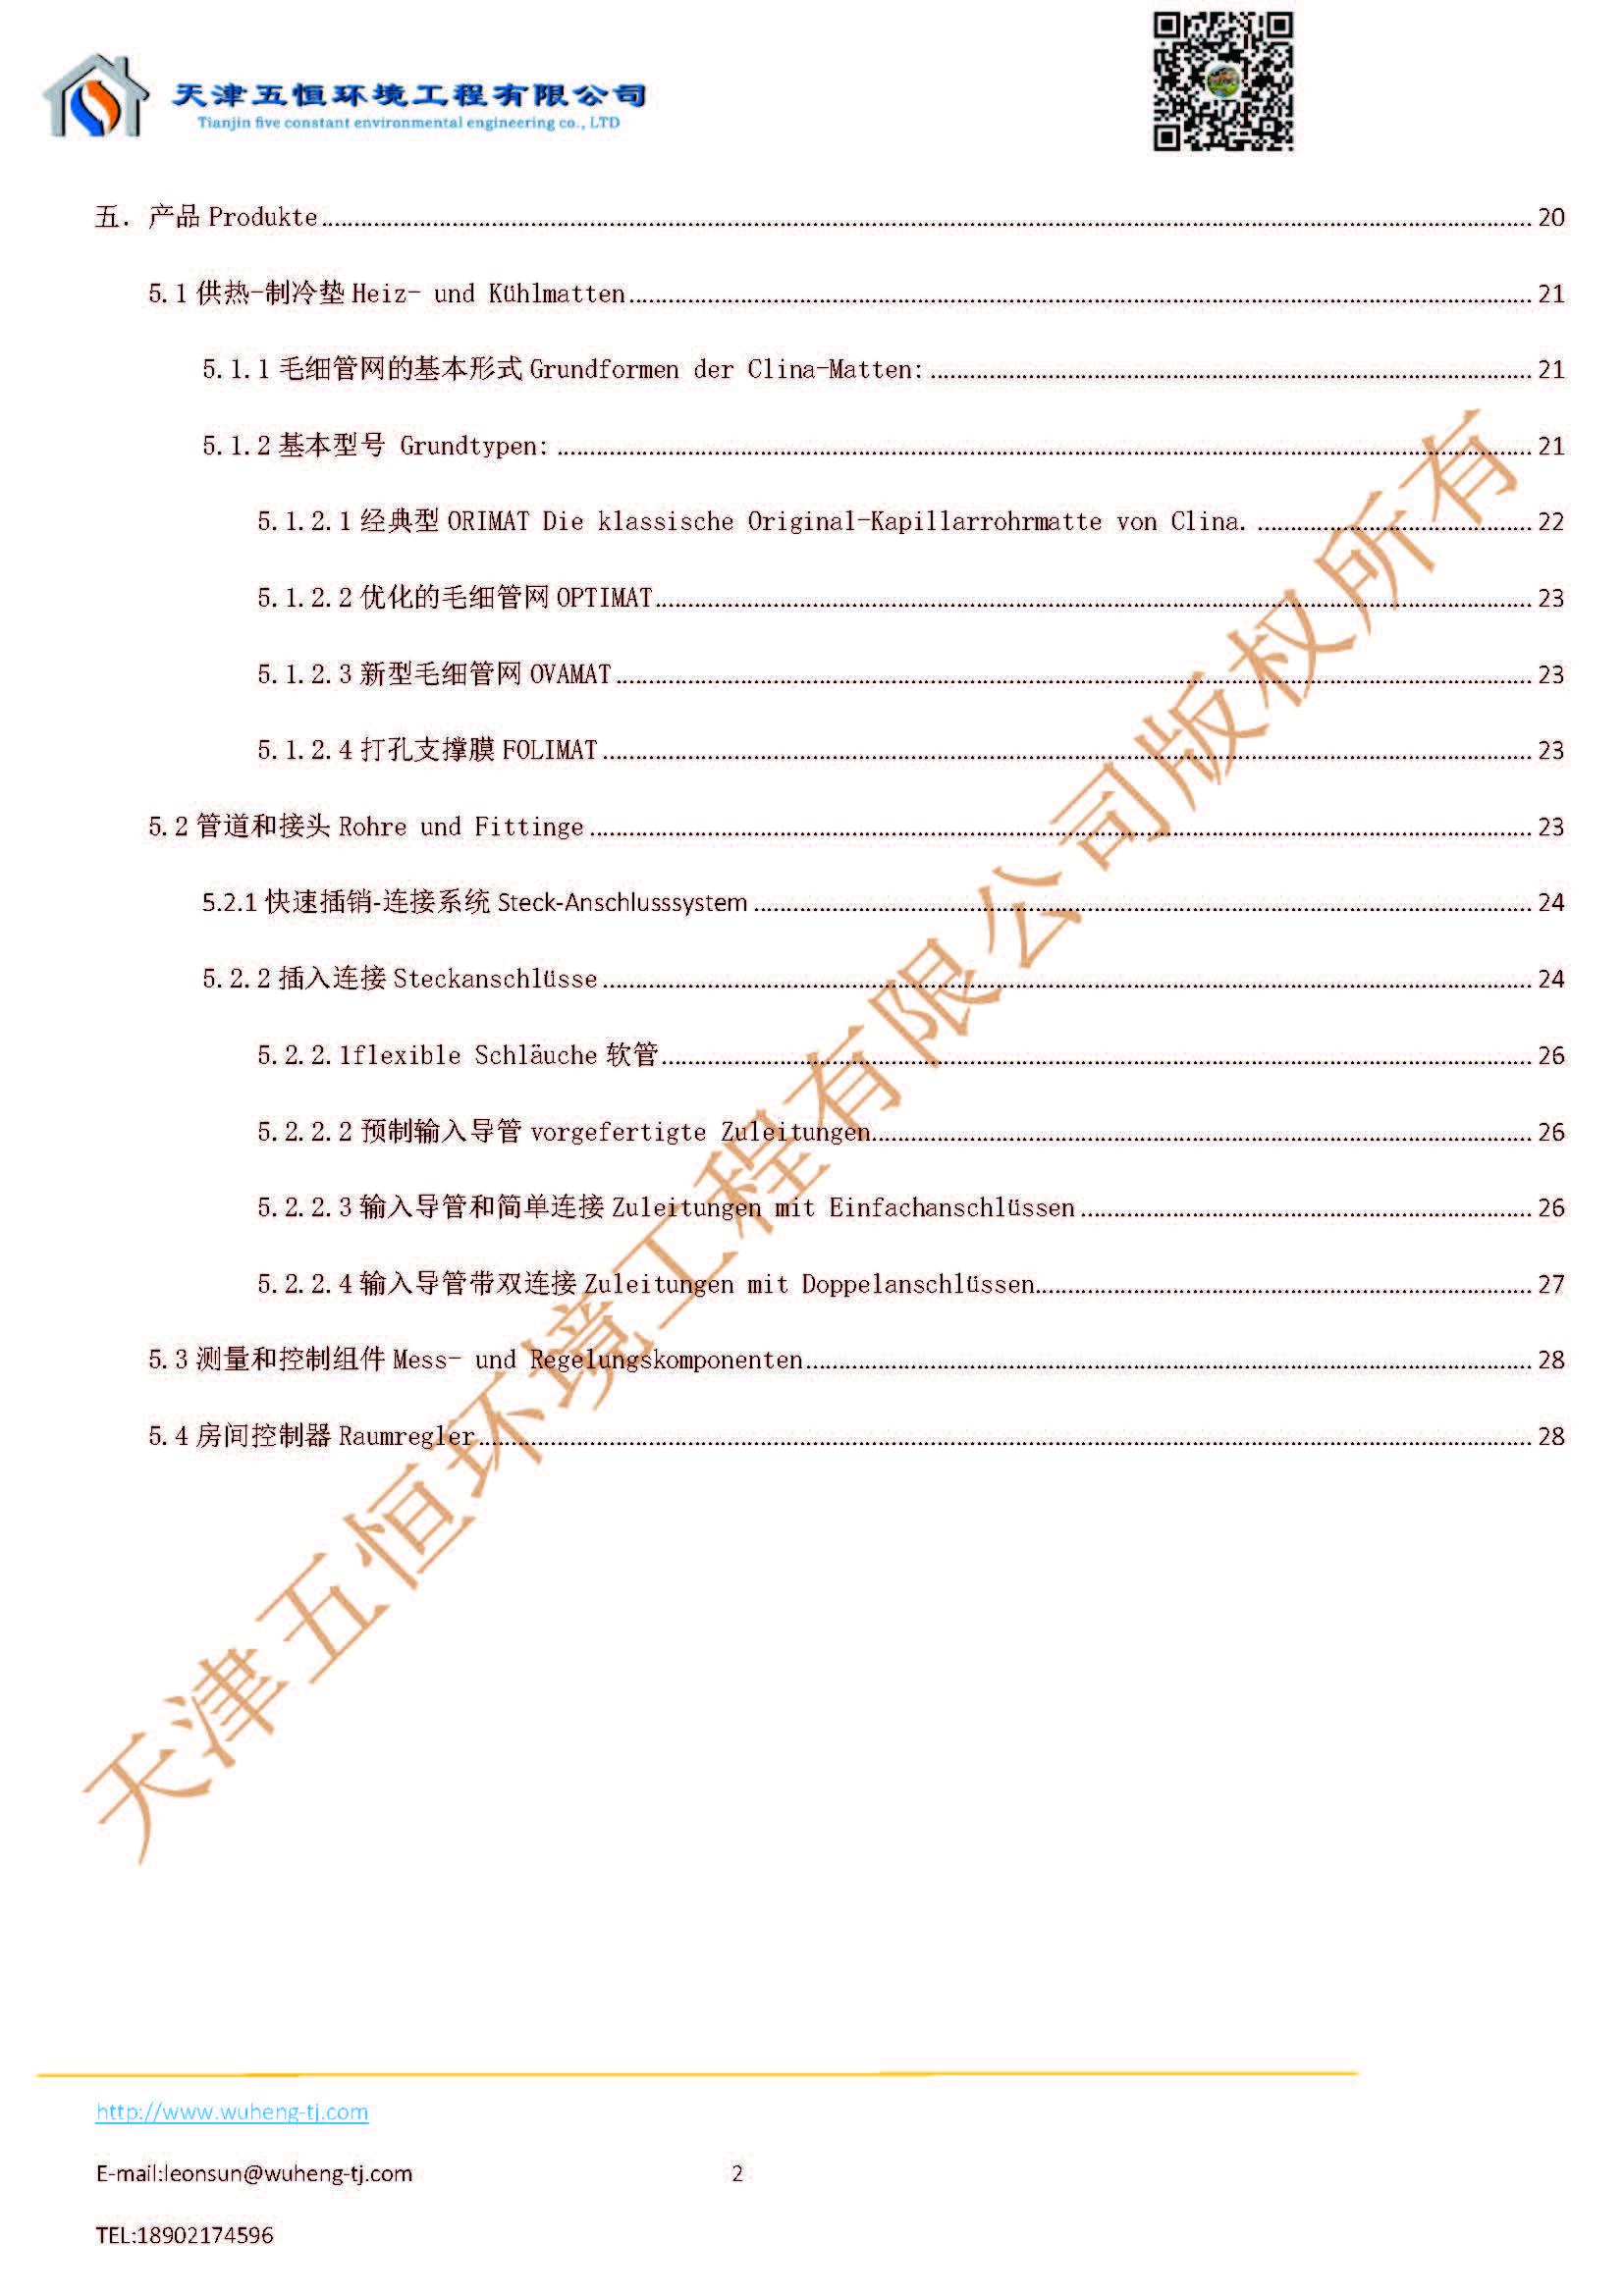 毛细管网技术规格及应用_页面_03